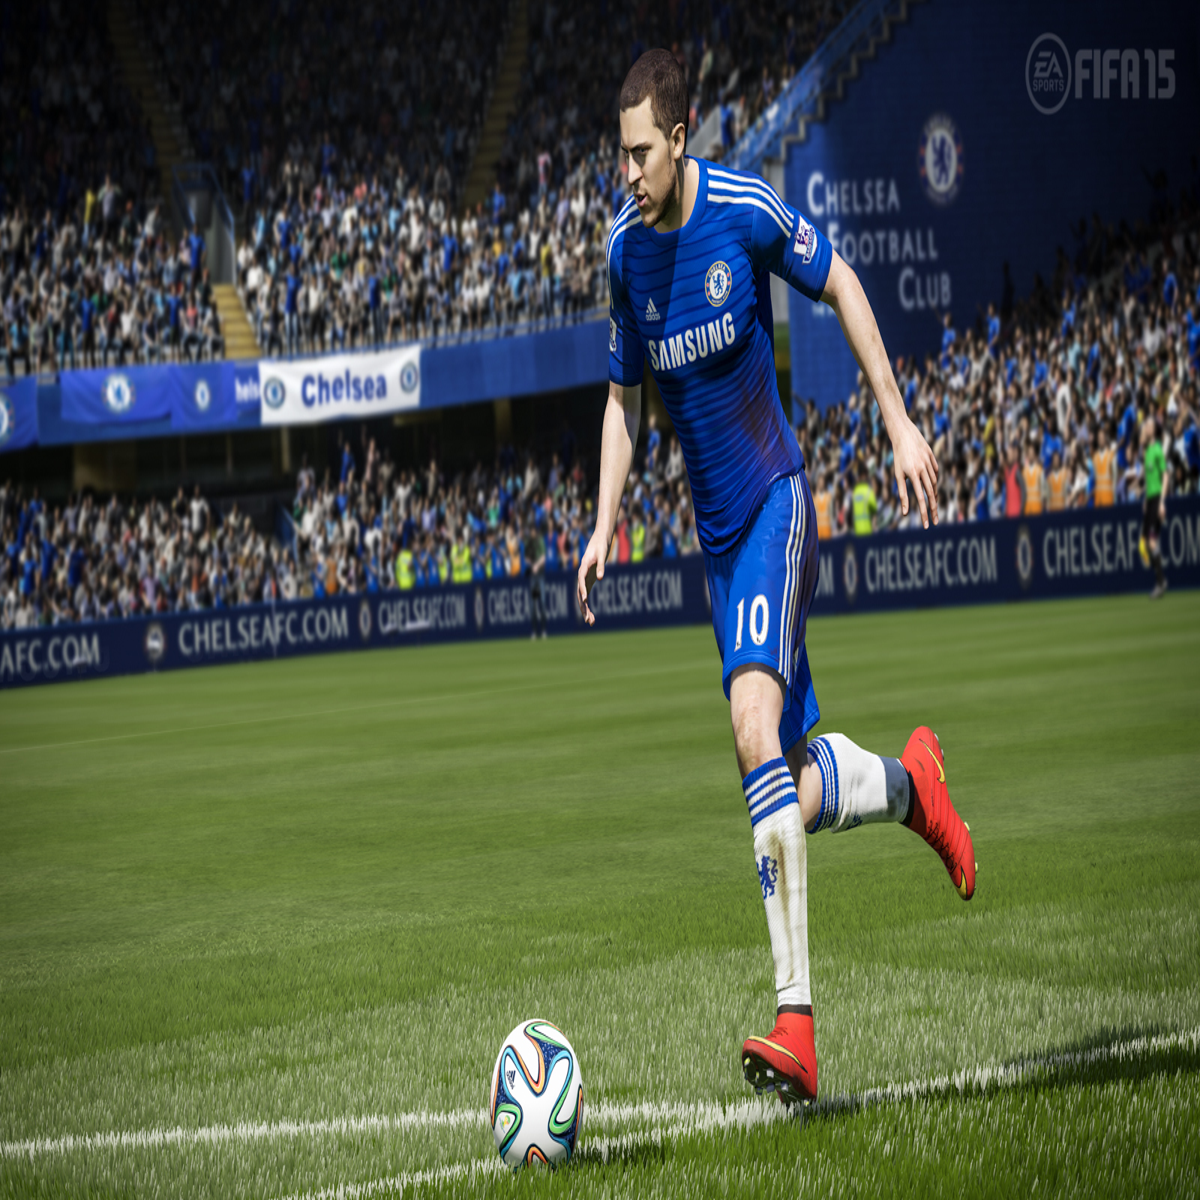 FIFA 15 PS3 PLAYSTATION 3 - Free Shipping